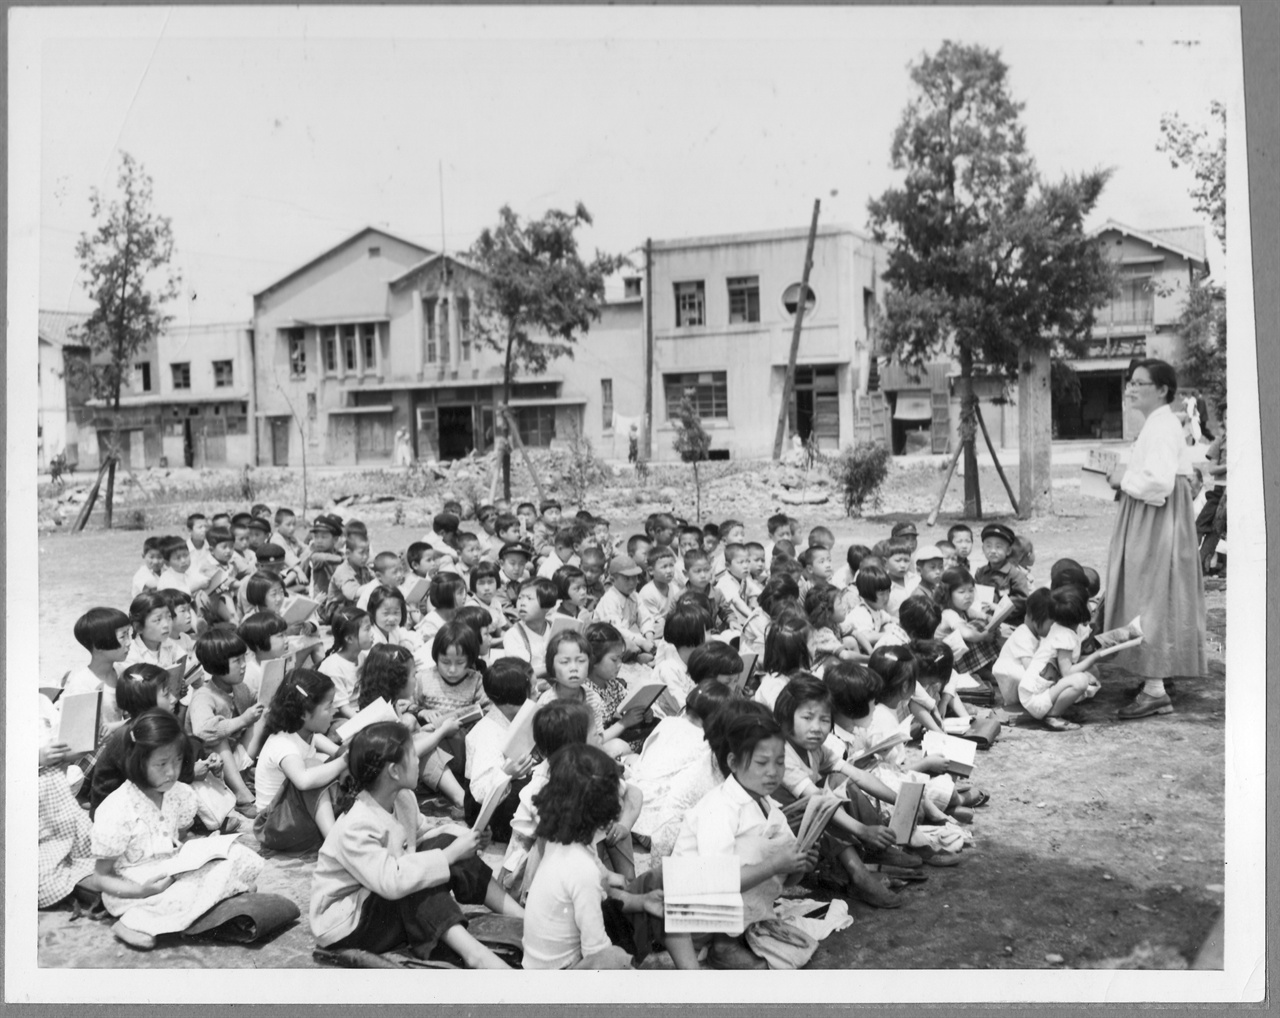  1953. 6. 5. 서울. 초등학교 학생들이 교실이 모자라 운동장에서 수업을 받고 있다. 